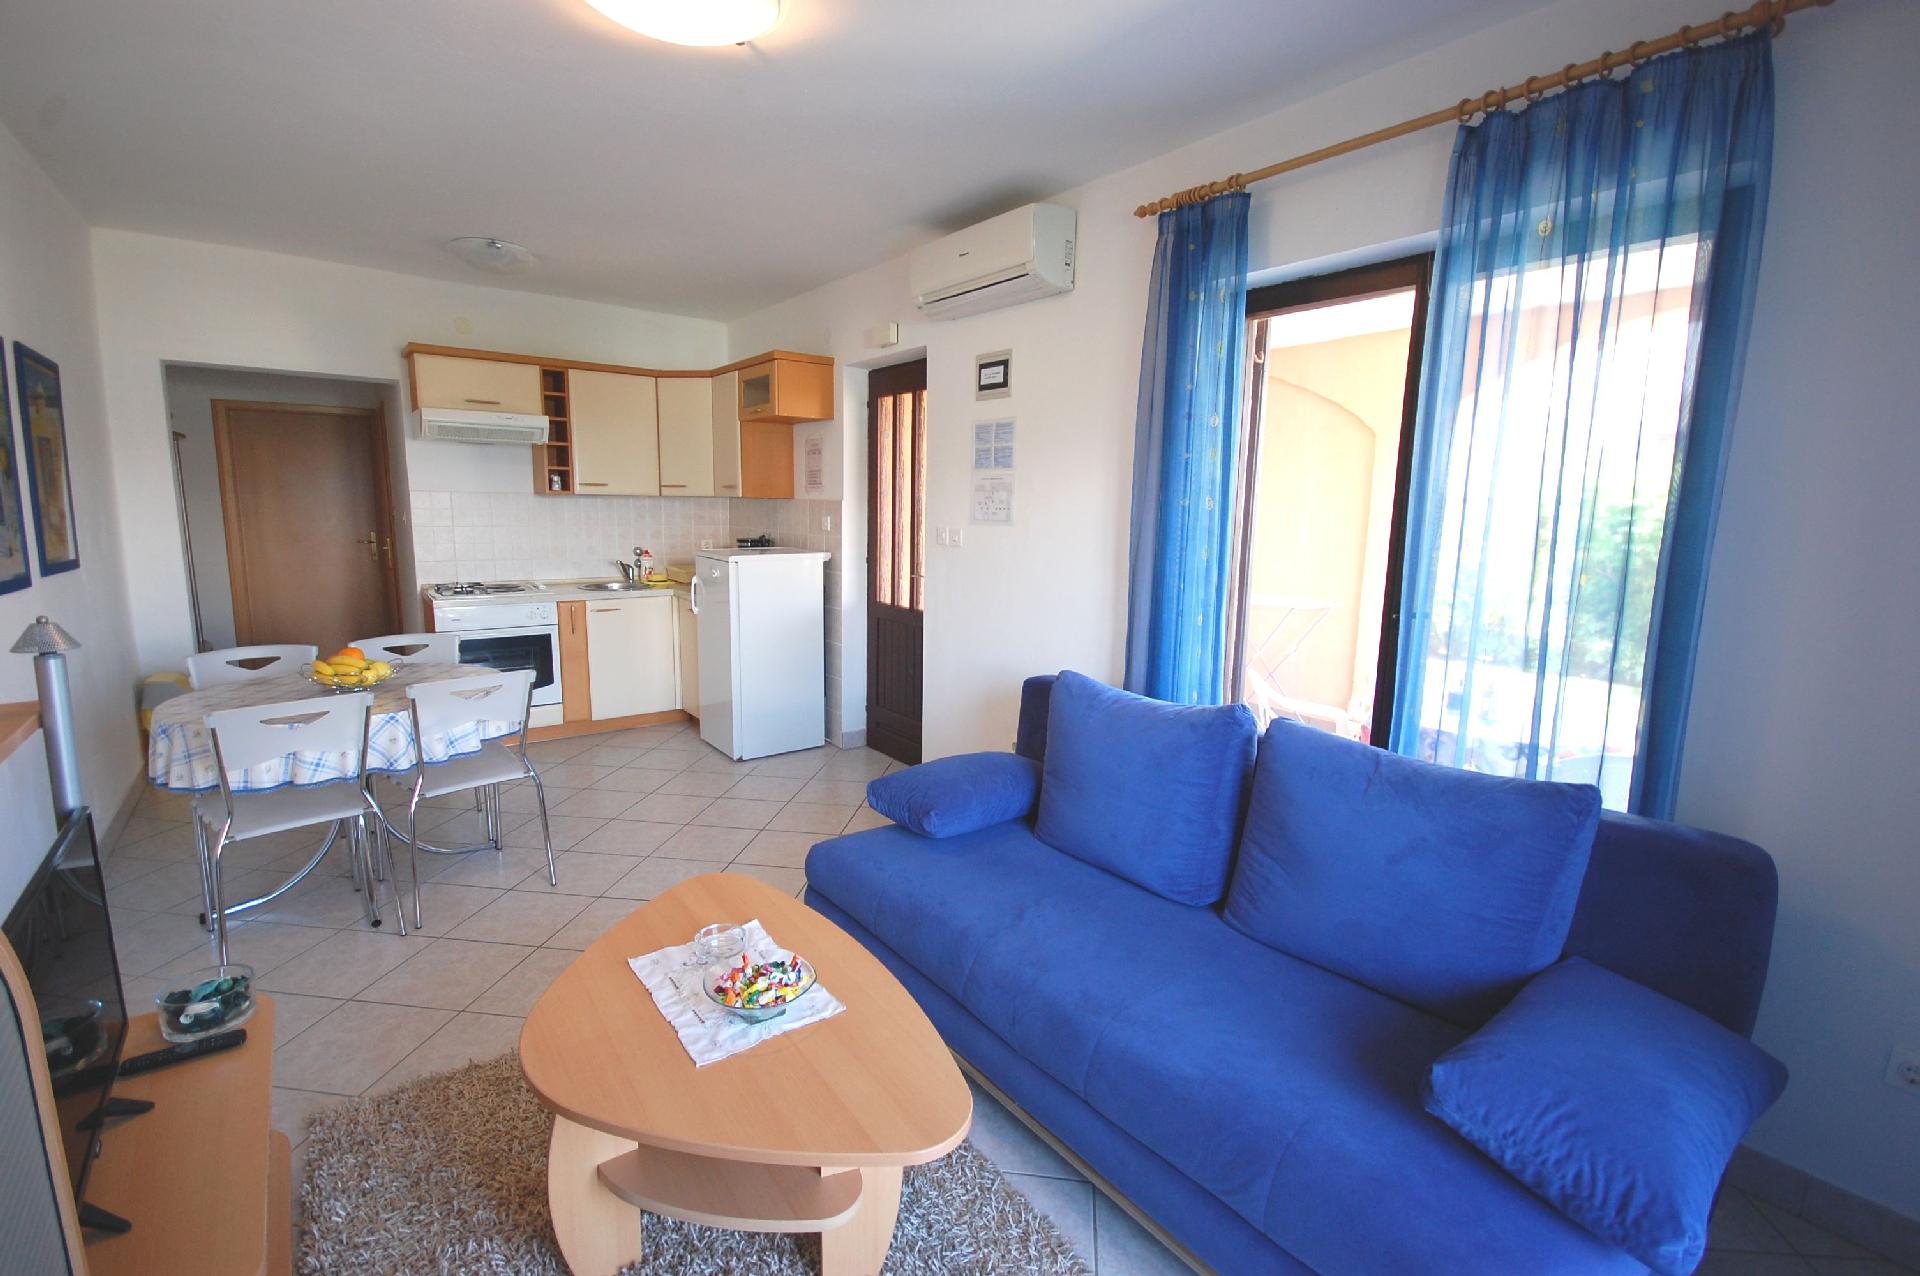 Ferienwohnung für 4 Personen ca. 37 m² i Ferienhaus in Kroatien